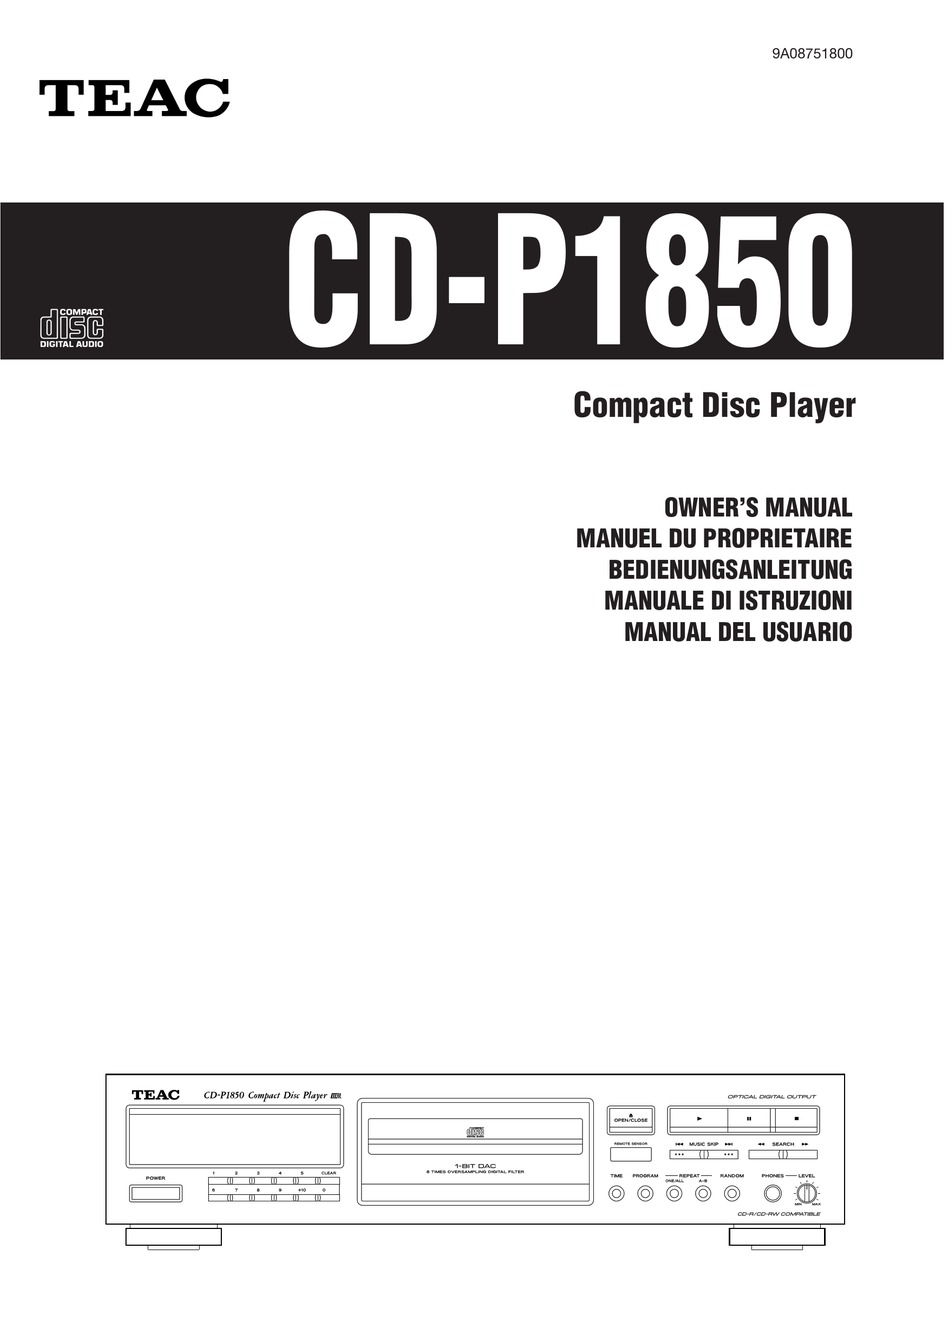 TEAC ティアック CD-P1850 CDプレーヤー CD-RW対応 2023年新作入荷